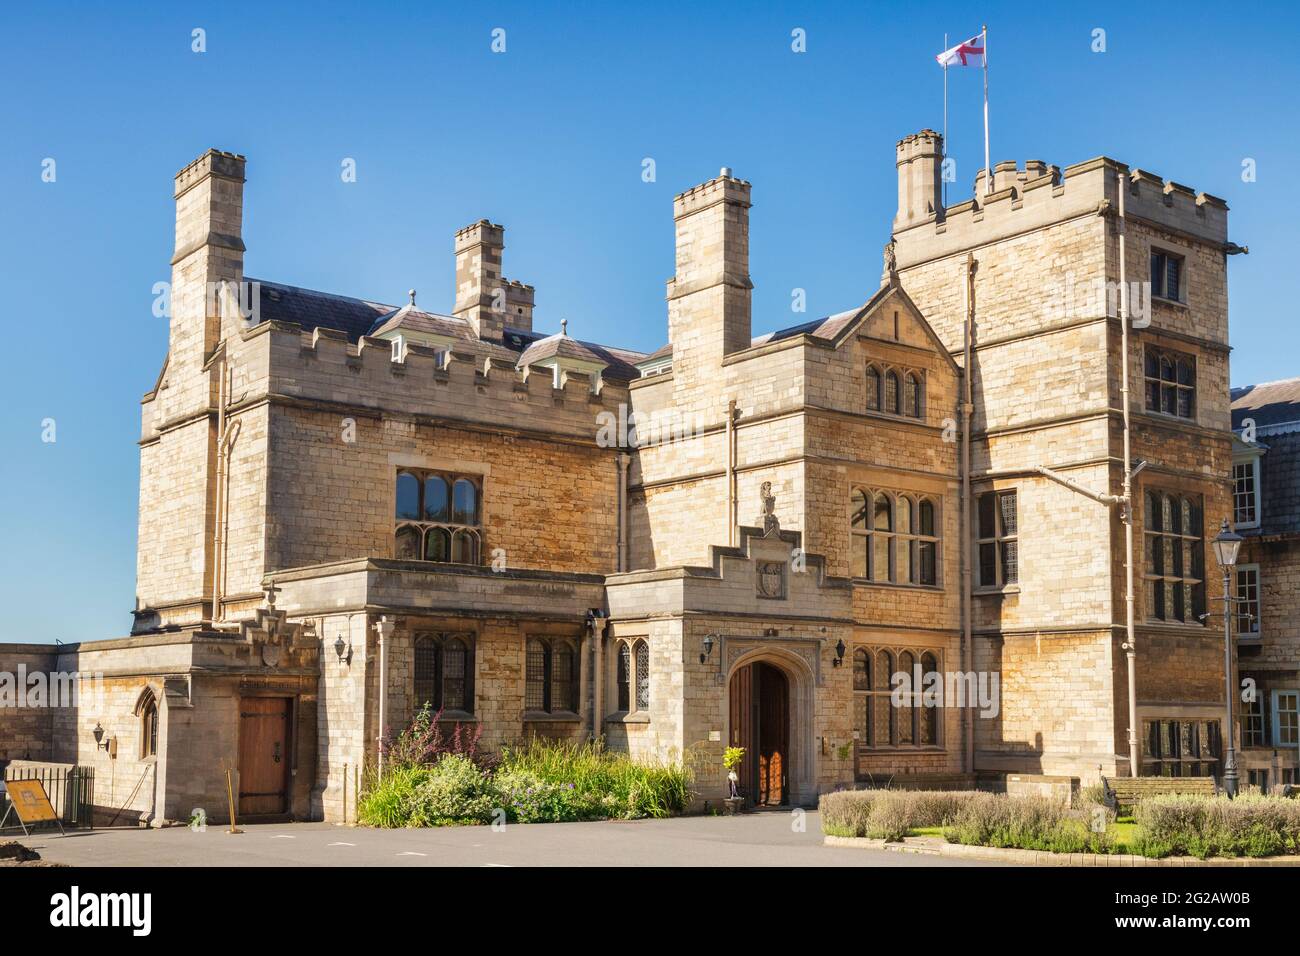 2 de julio de 2019: Lincoln, Reino Unido - El Palacio del Viejo Obispo, o Edward King House, en un día de verano. Esta es una reconstrucción victoriana del palacio medieval, Foto de stock